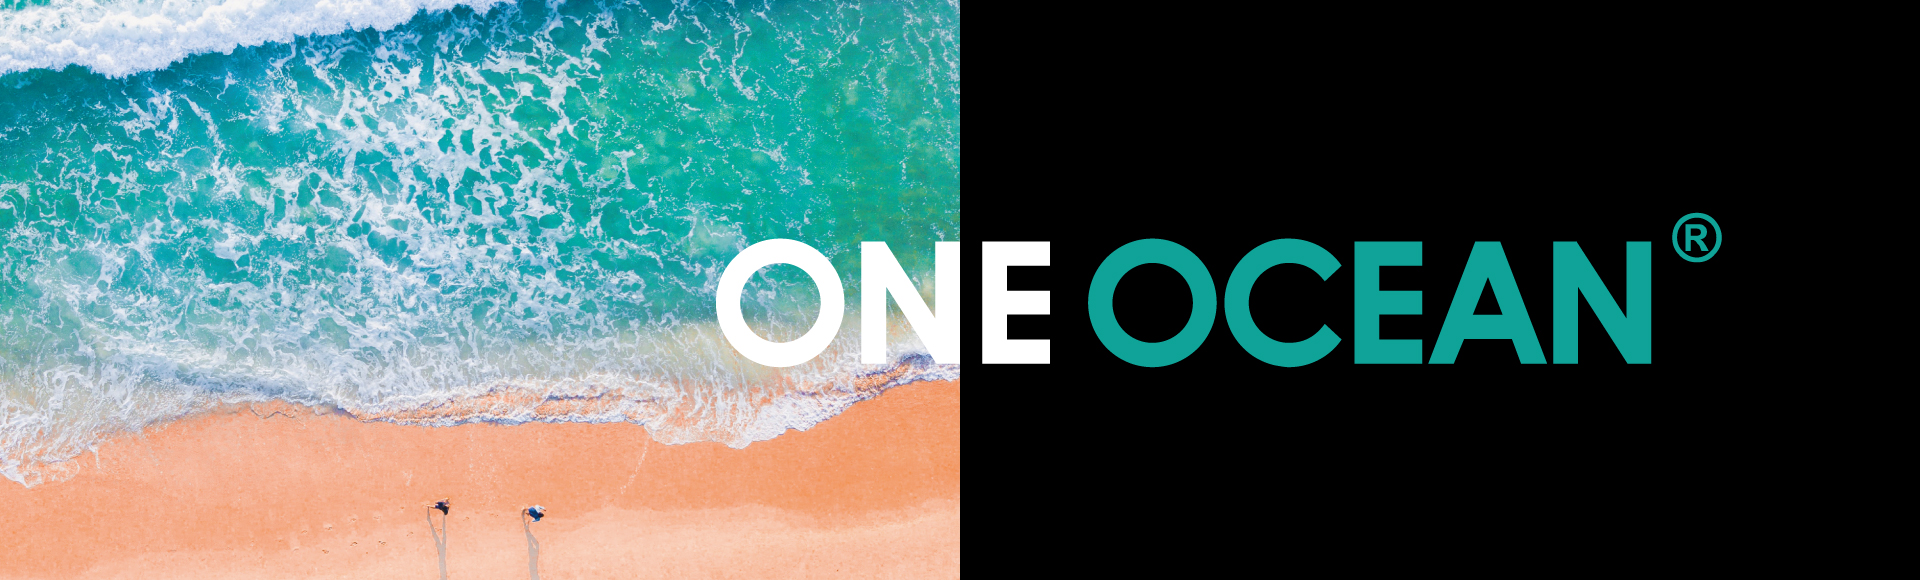 ONE OCEAN®